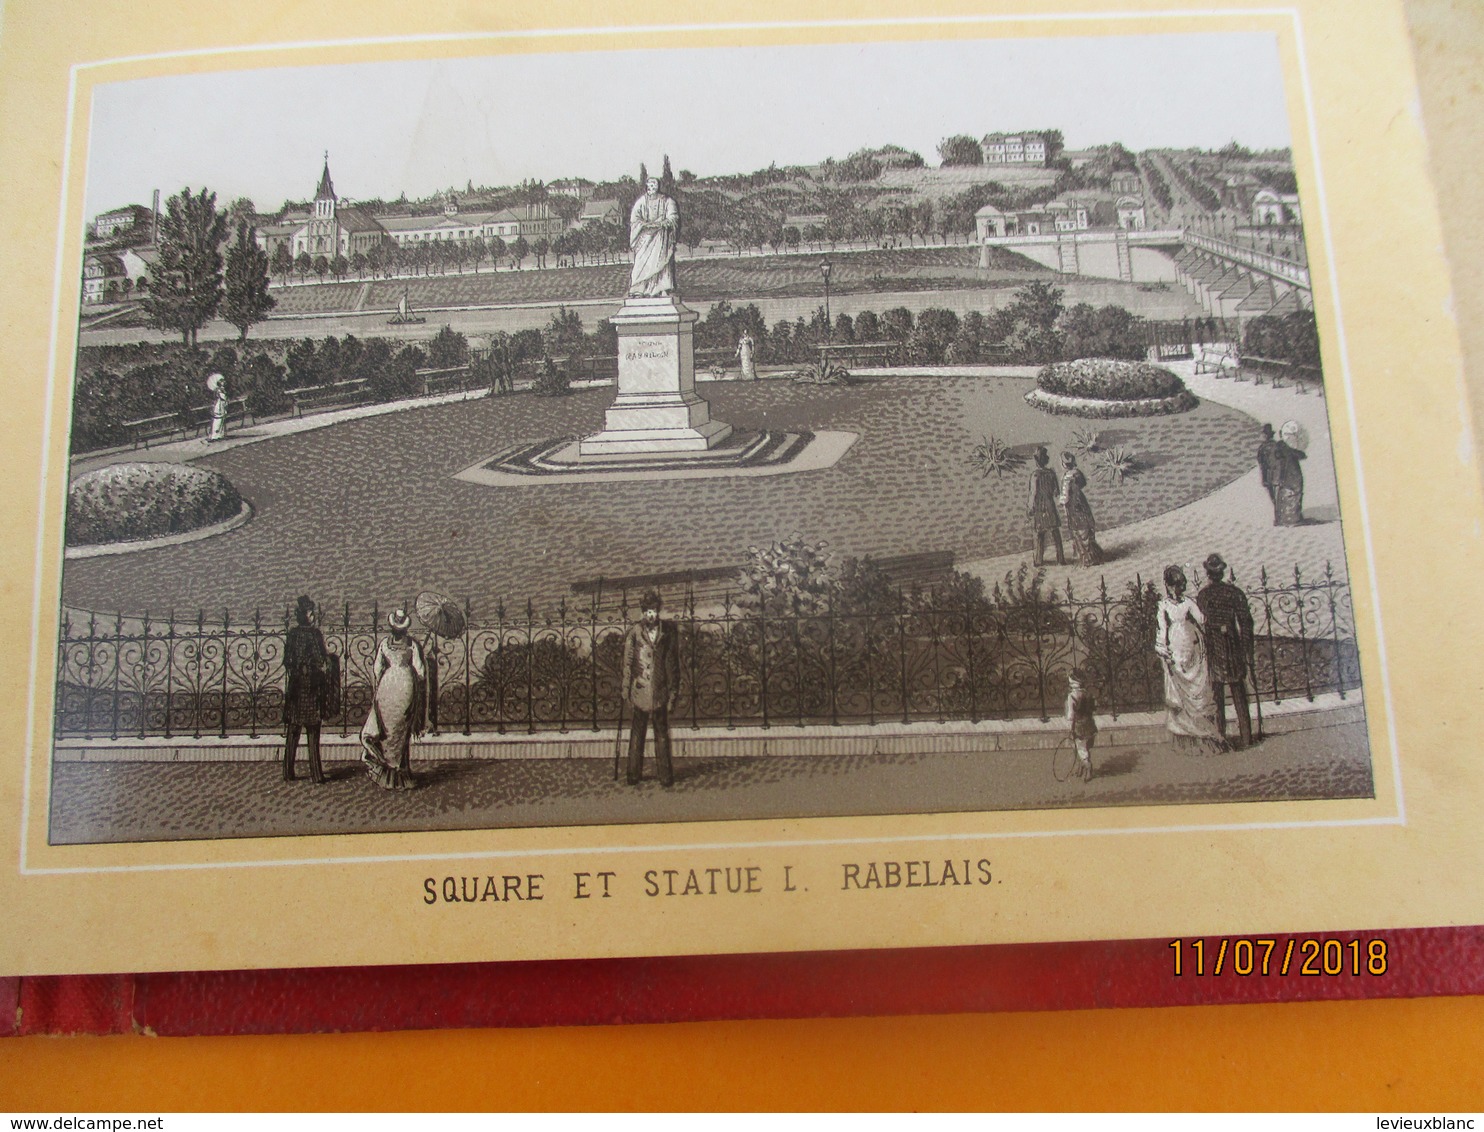 Vues De  Monuments De Ville/TOURS/14 Vues /En Accordéon/ Neurdein / Pinkau LEIPZIG/Vers 1880-1890         PGC237 - Cartes Routières